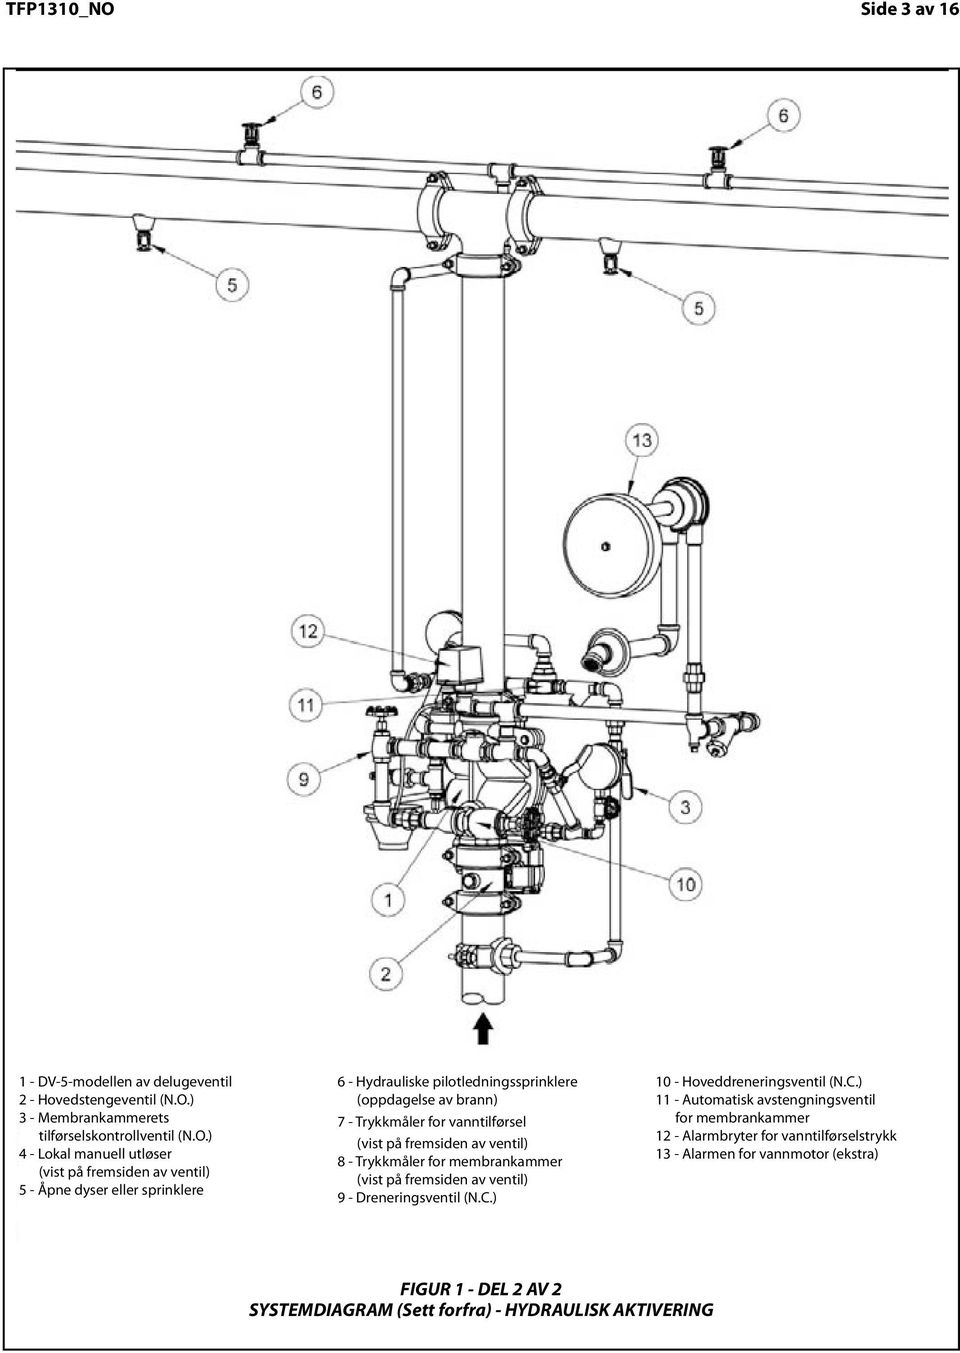 Side 3 3 of av 6 - DV 5-modellen av delugeventil - Hovedstengeventil (N.O.